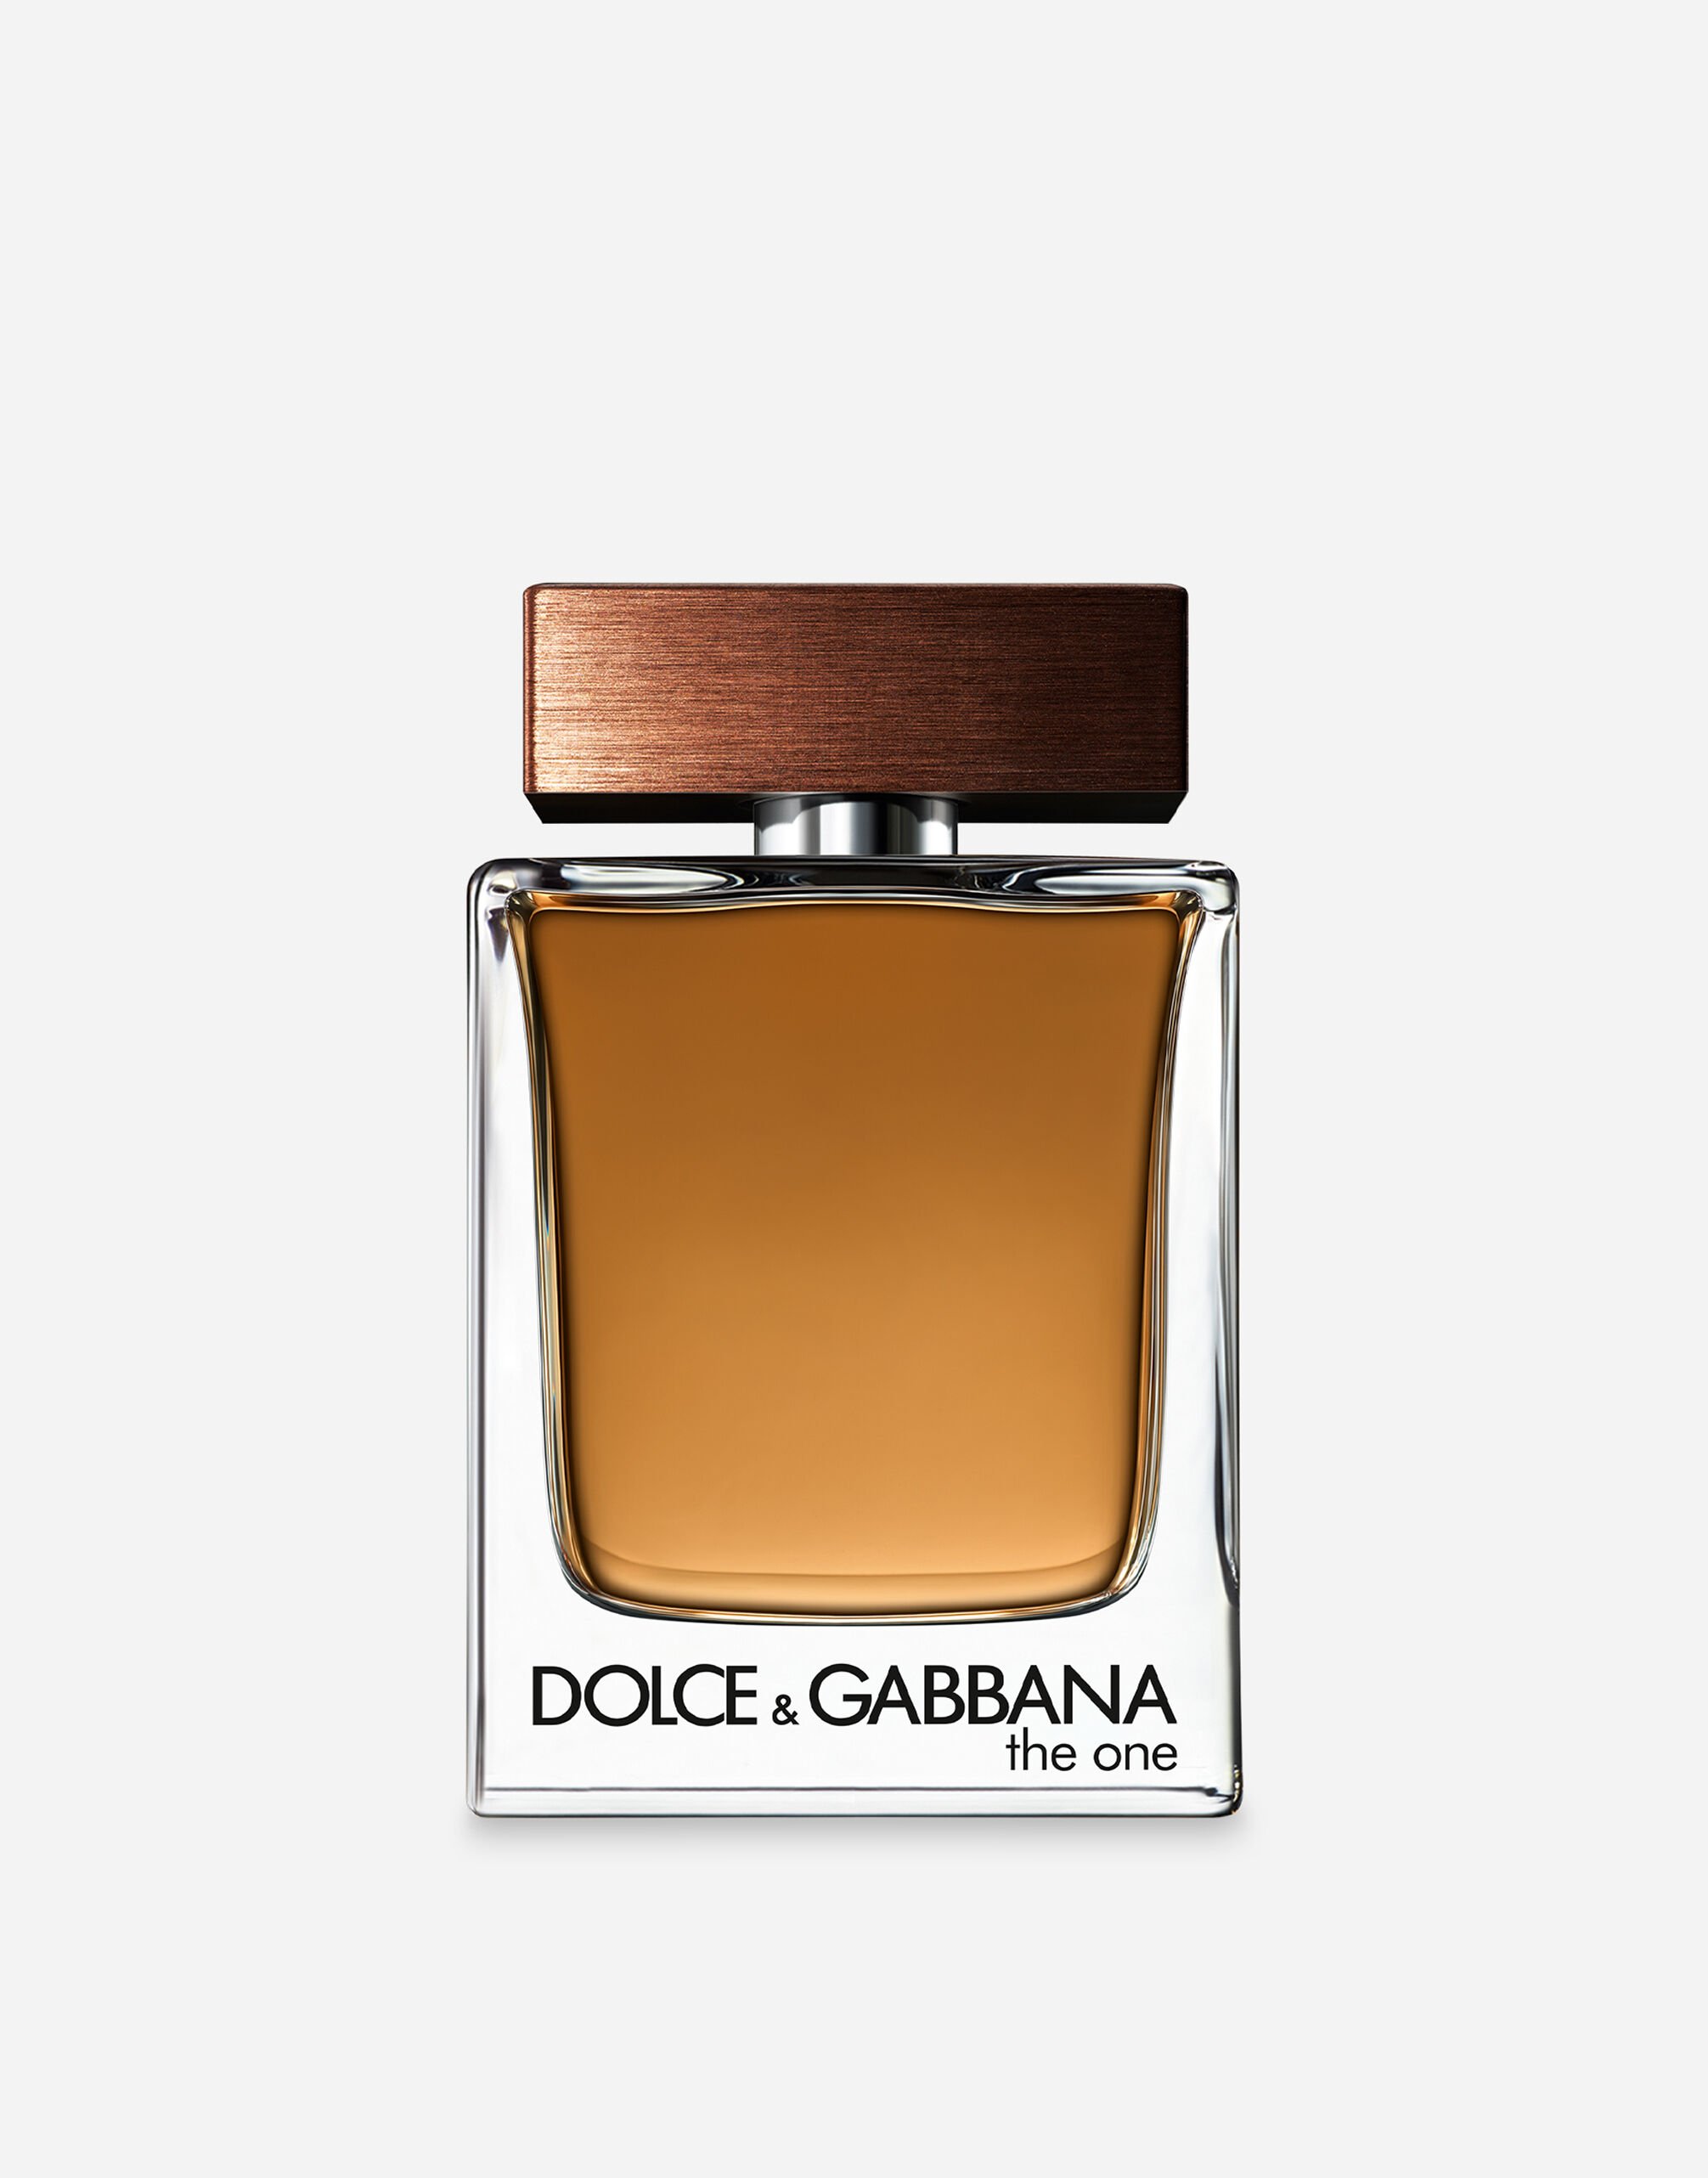 Dolce & Gabbana The One for Men Eau de Toilette - VT00KBVT000